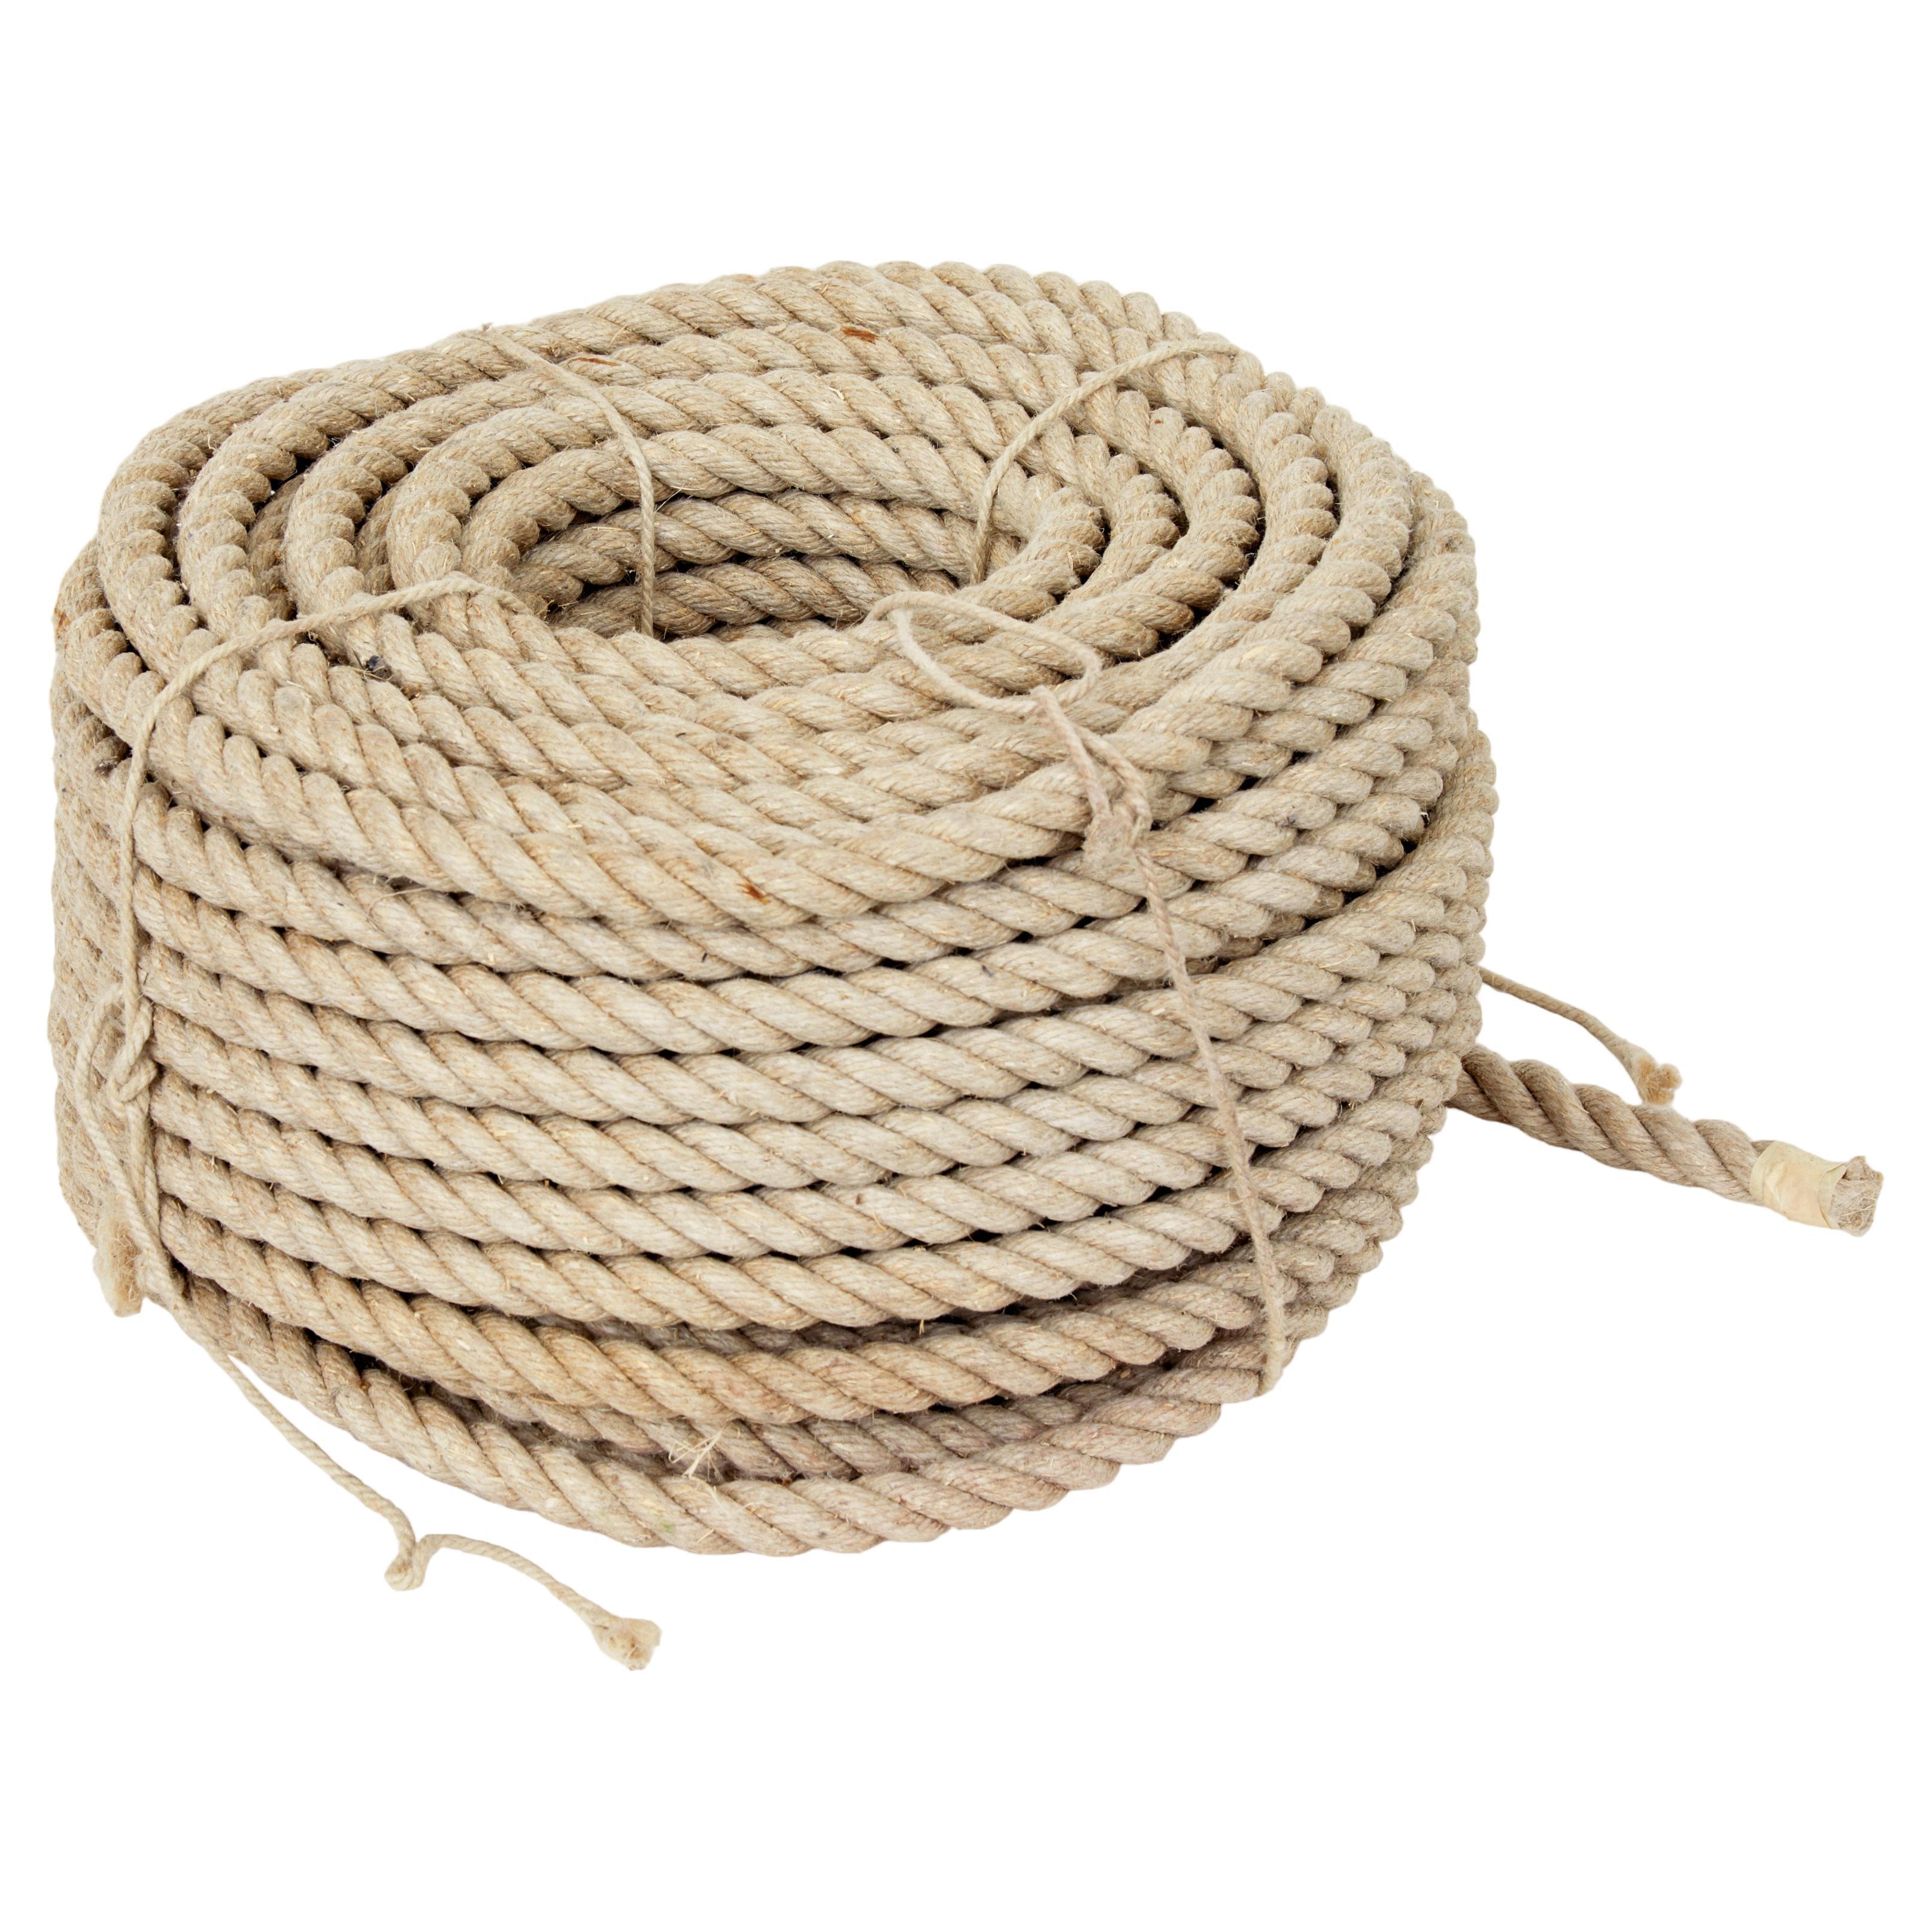 Mid 20th century unused bundle of rope